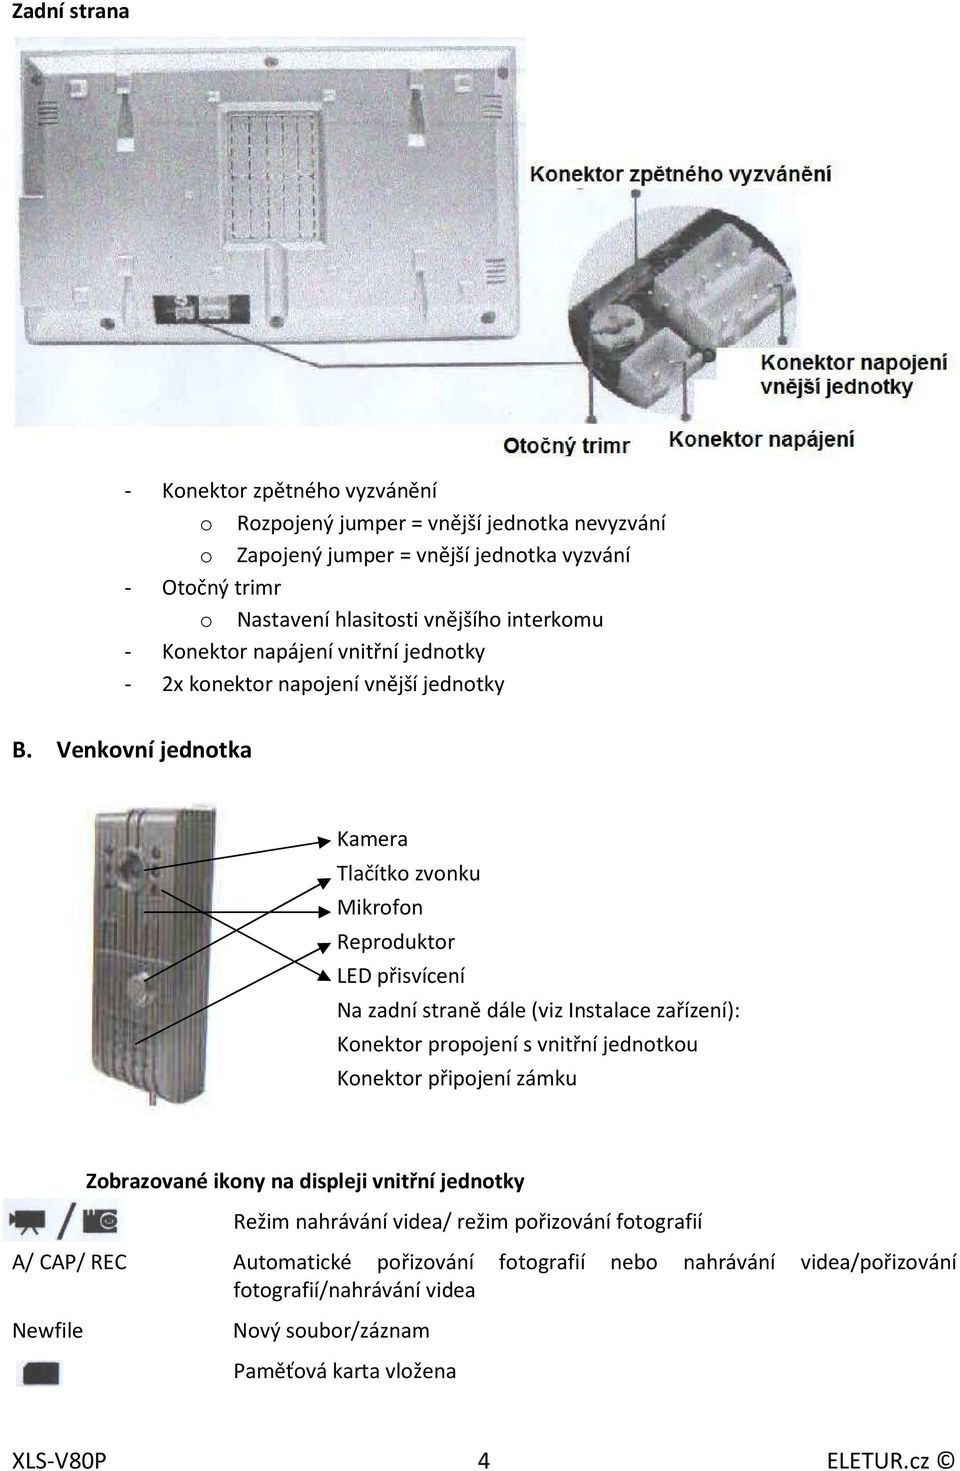 Venkovní jednotka Kamera Tlačítko zvonku Mikrofon Reproduktor LED přisvícení Na zadní straně dále (viz Instalace zařízení): Konektor propojení s vnitřní jednotkou Konektor připojení